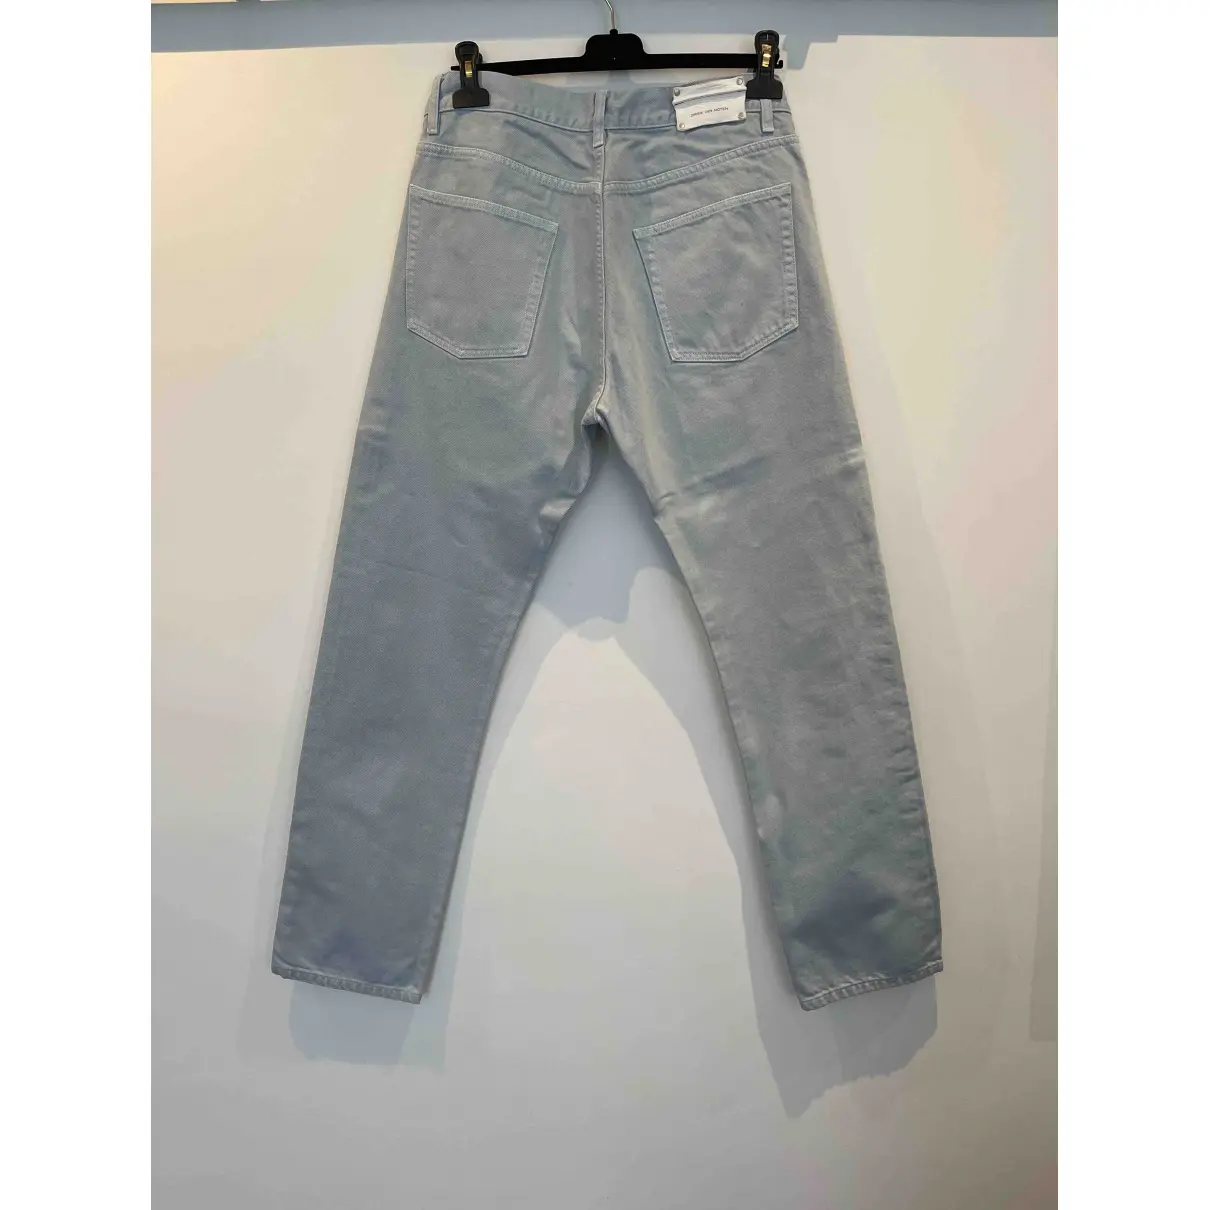 Buy Dries Van Noten Straight jeans online